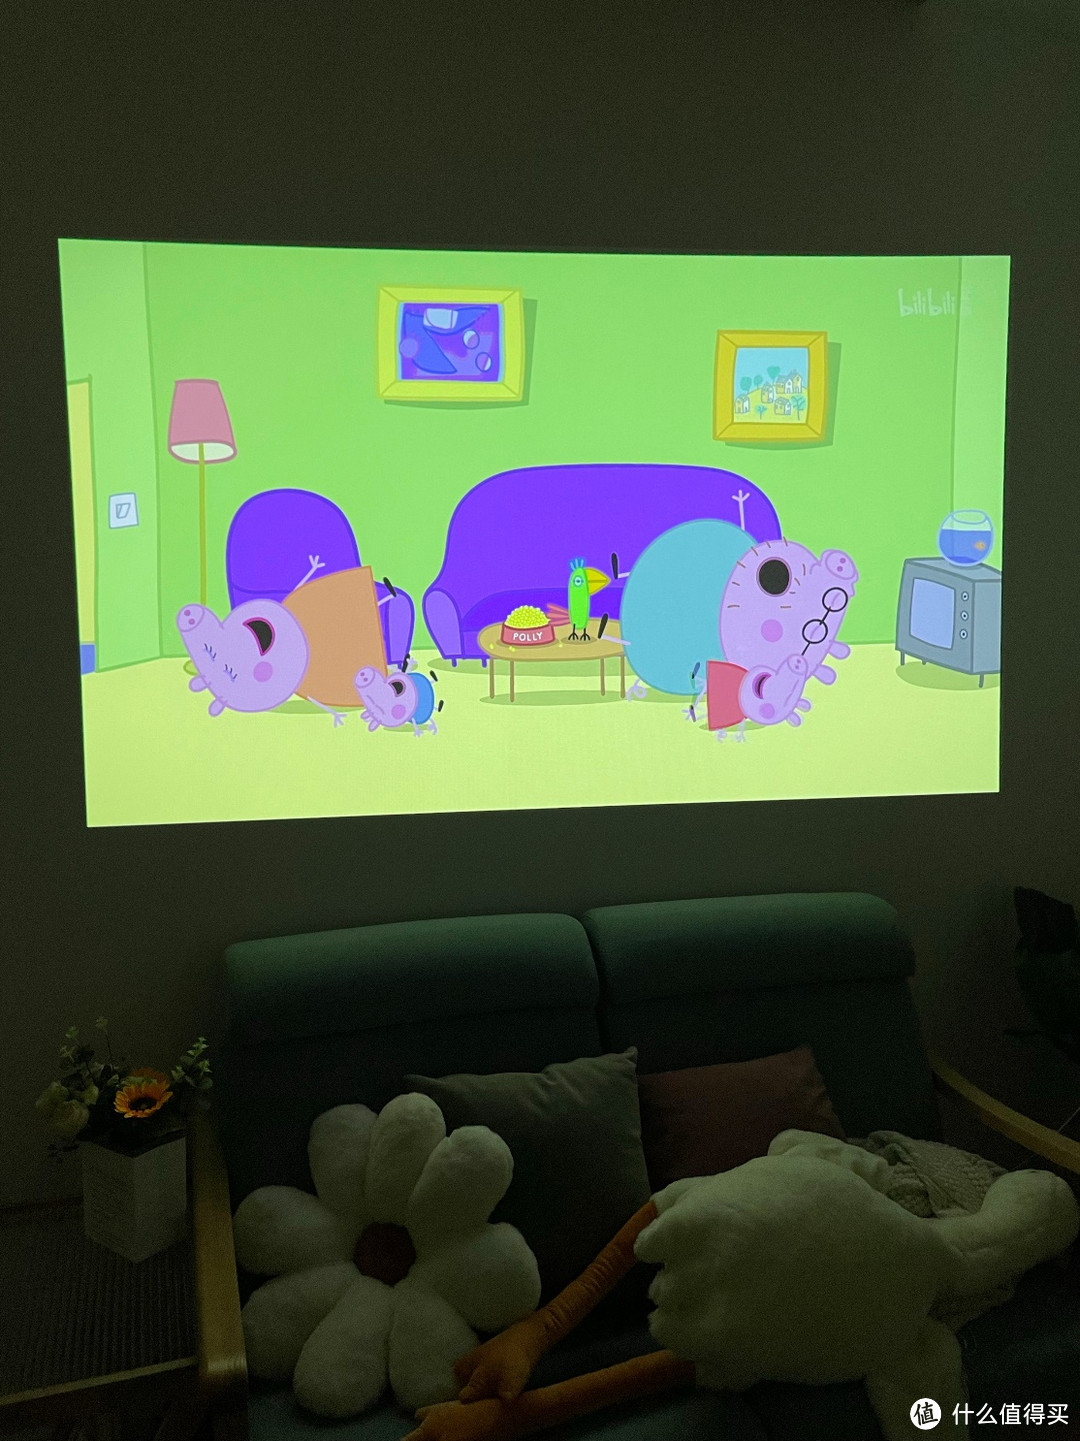 ​分享一款适合孩子学习和家长观影娱乐的智能投影仪——猫我X3 Pro